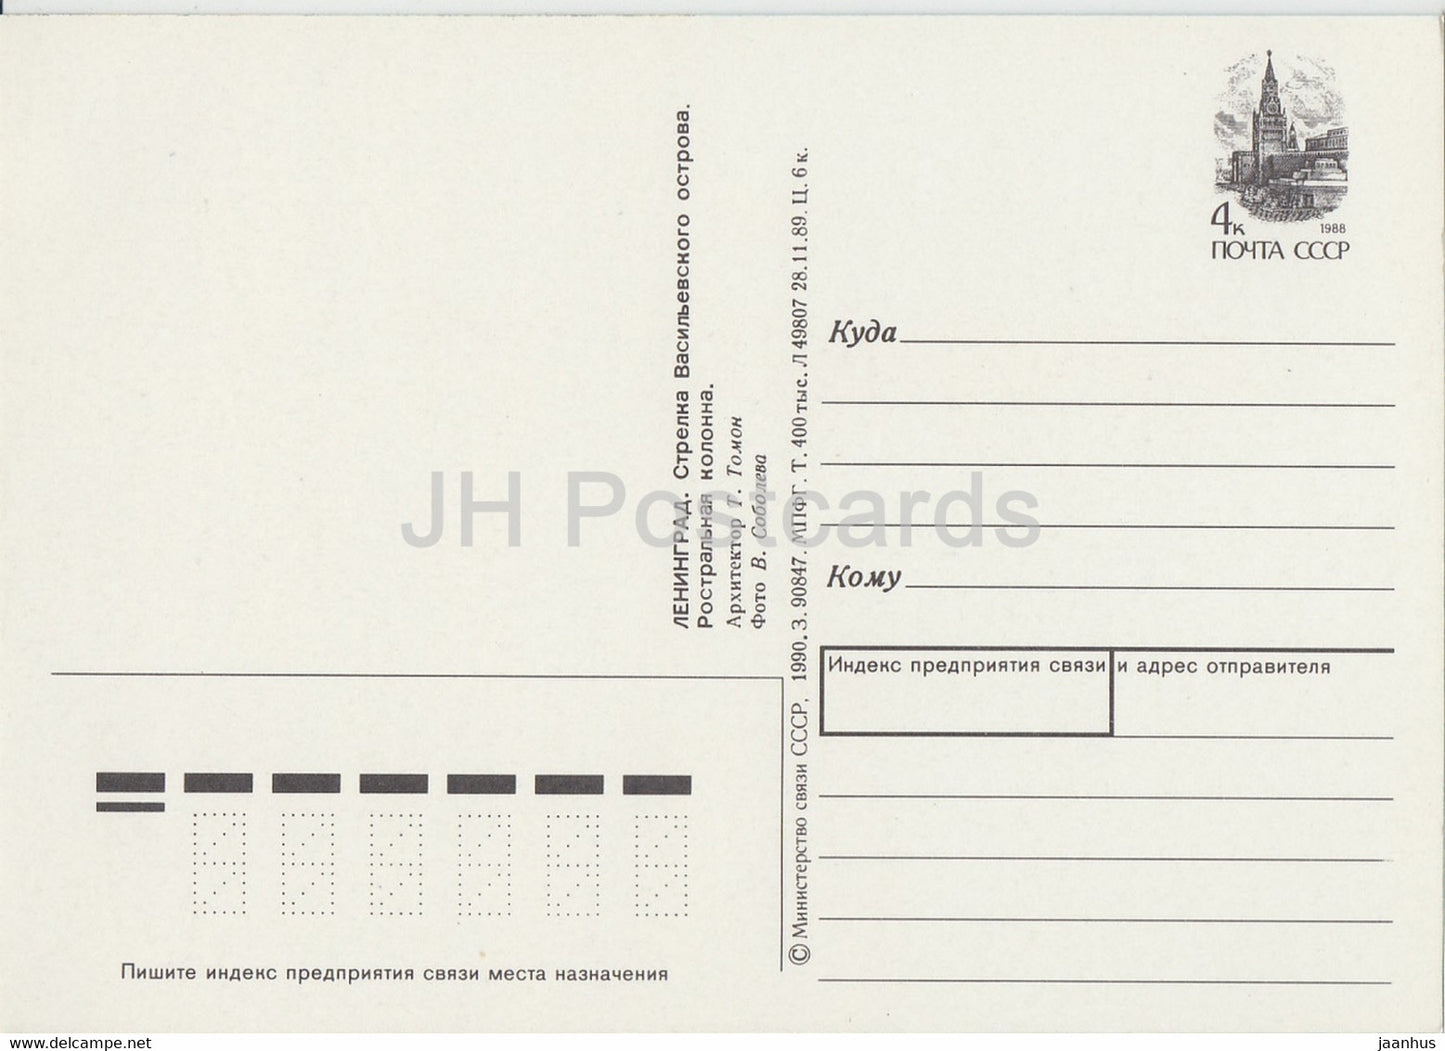 Leningrad - Saint-Pétersbourg - Flèche de l'île Vassilievski - Entier postal de la colonne rostrale - 1990 - Russie URSS - inutilisé